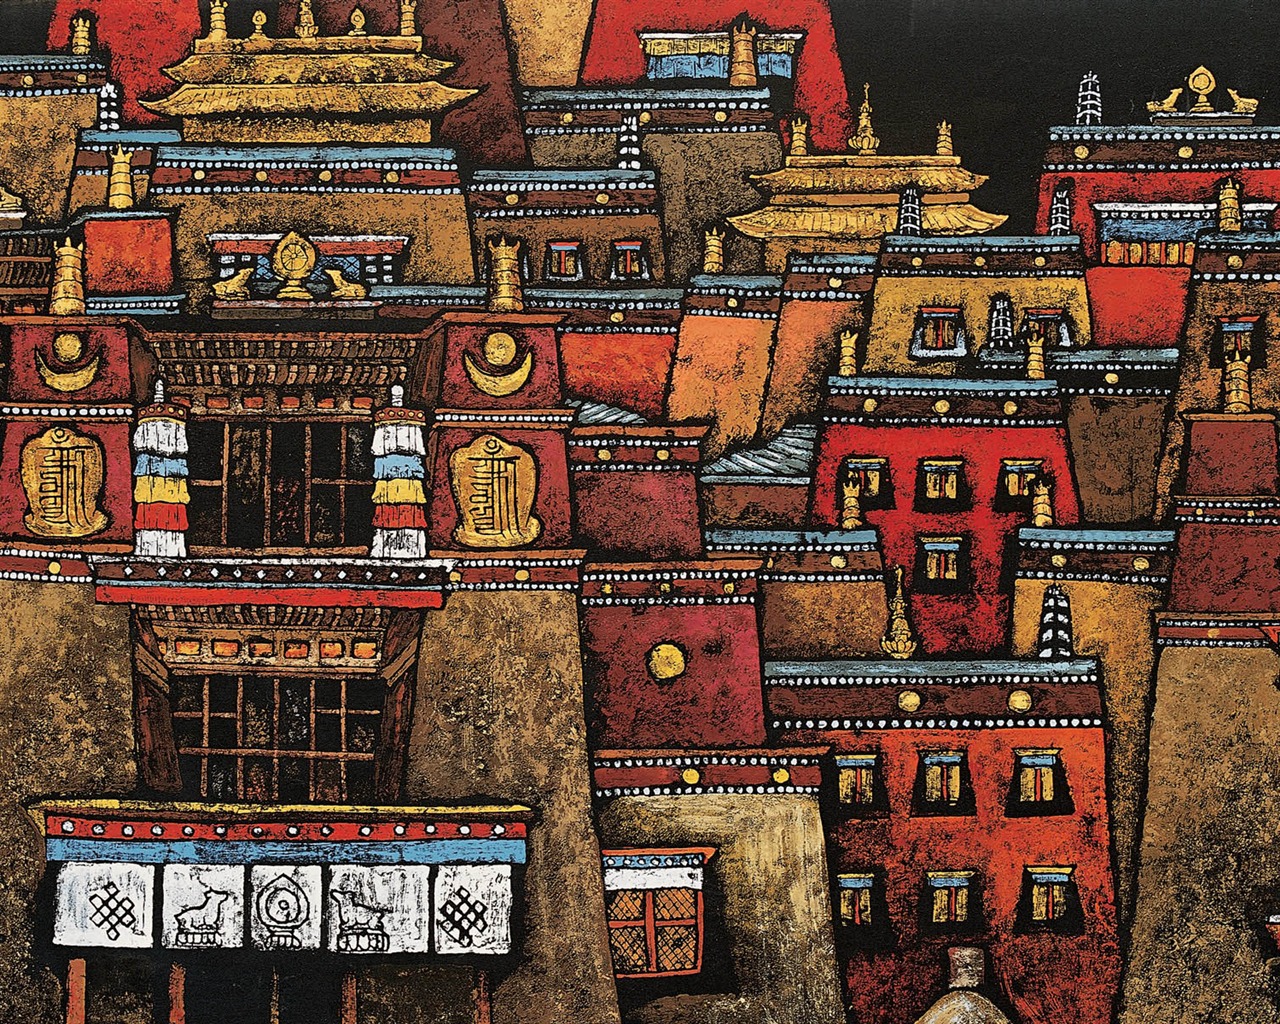 Cheung Pakistán tibetana fondo de pantalla de impresión (1) #18 - 1280x1024